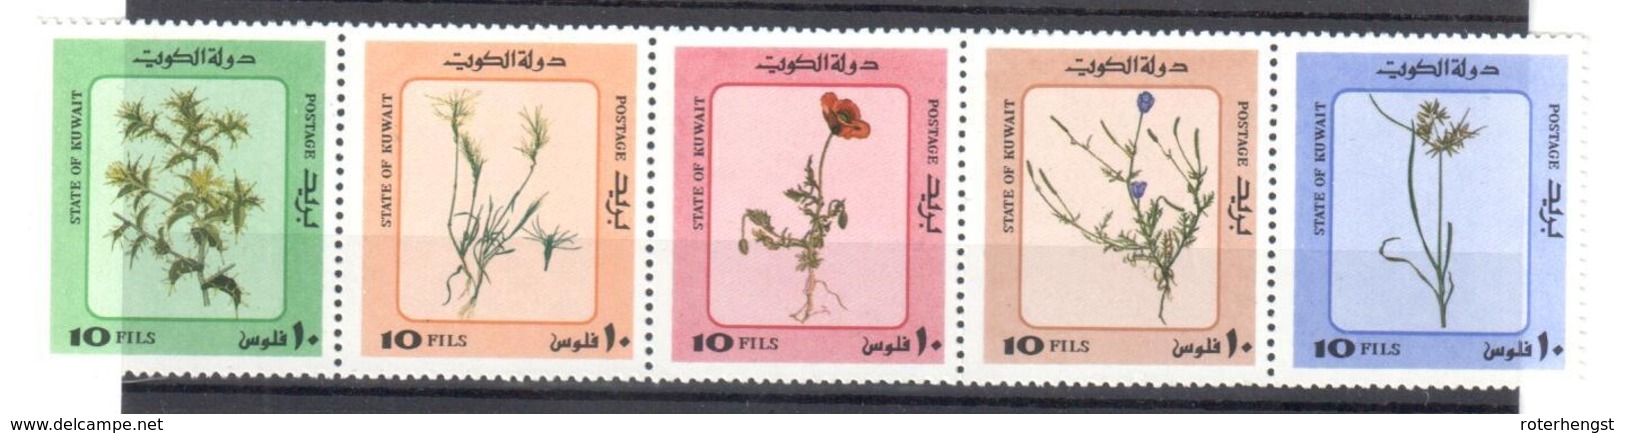 Kuweit Mnh ** Flowers Strip Of 5 - Kuwait